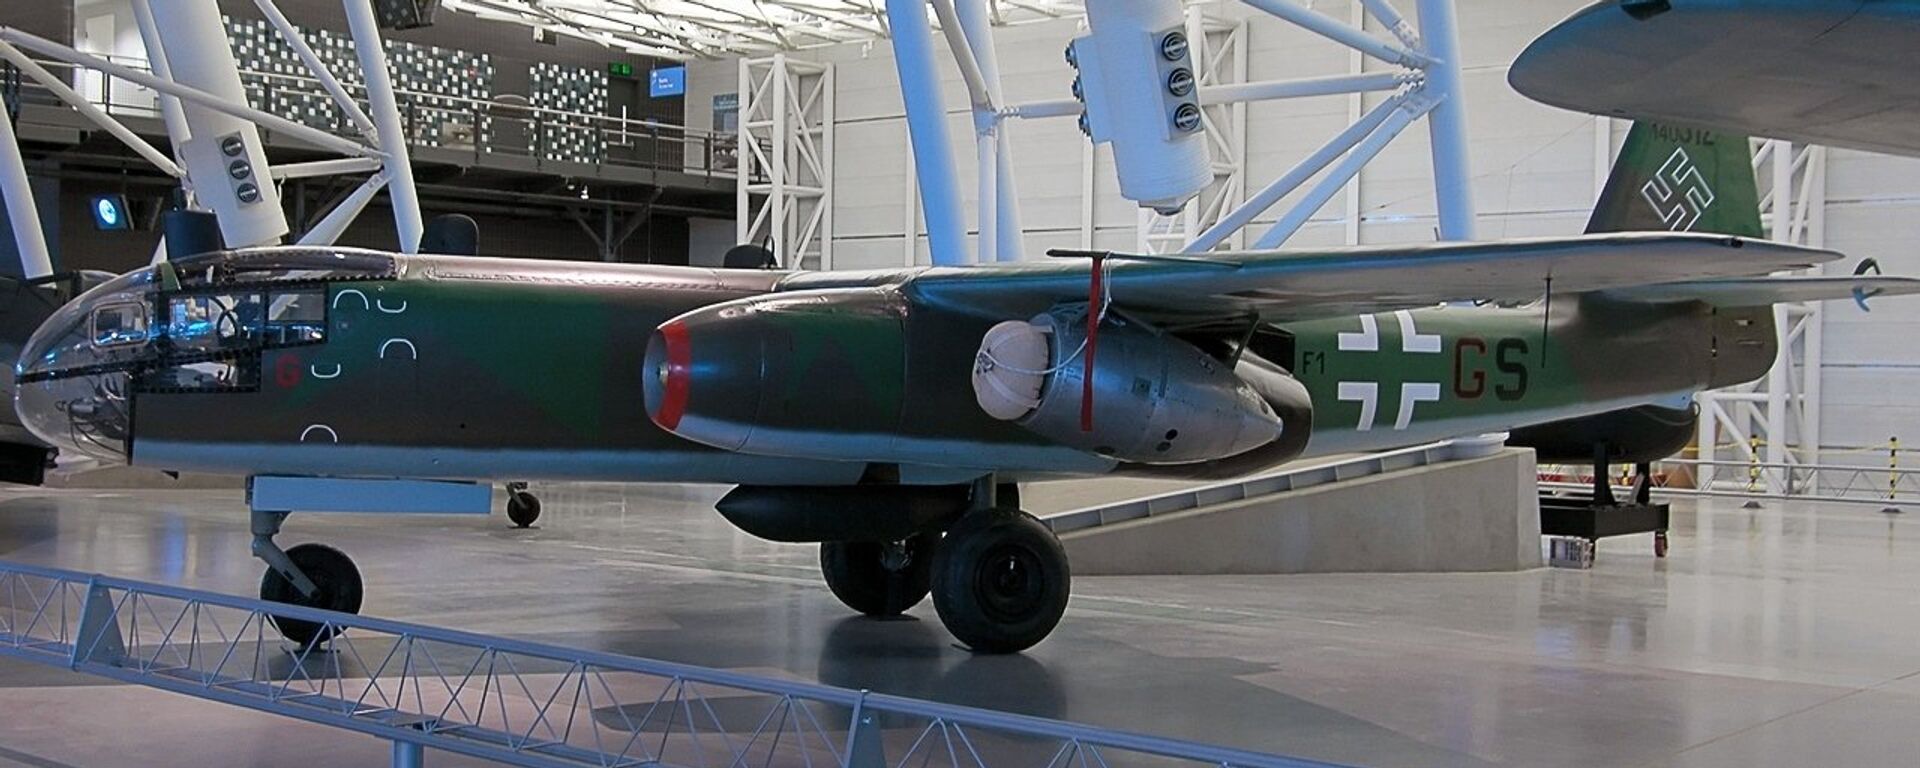 Un Arado Ar-234, foto archivo - Sputnik Mundo, 1920, 29.11.2018